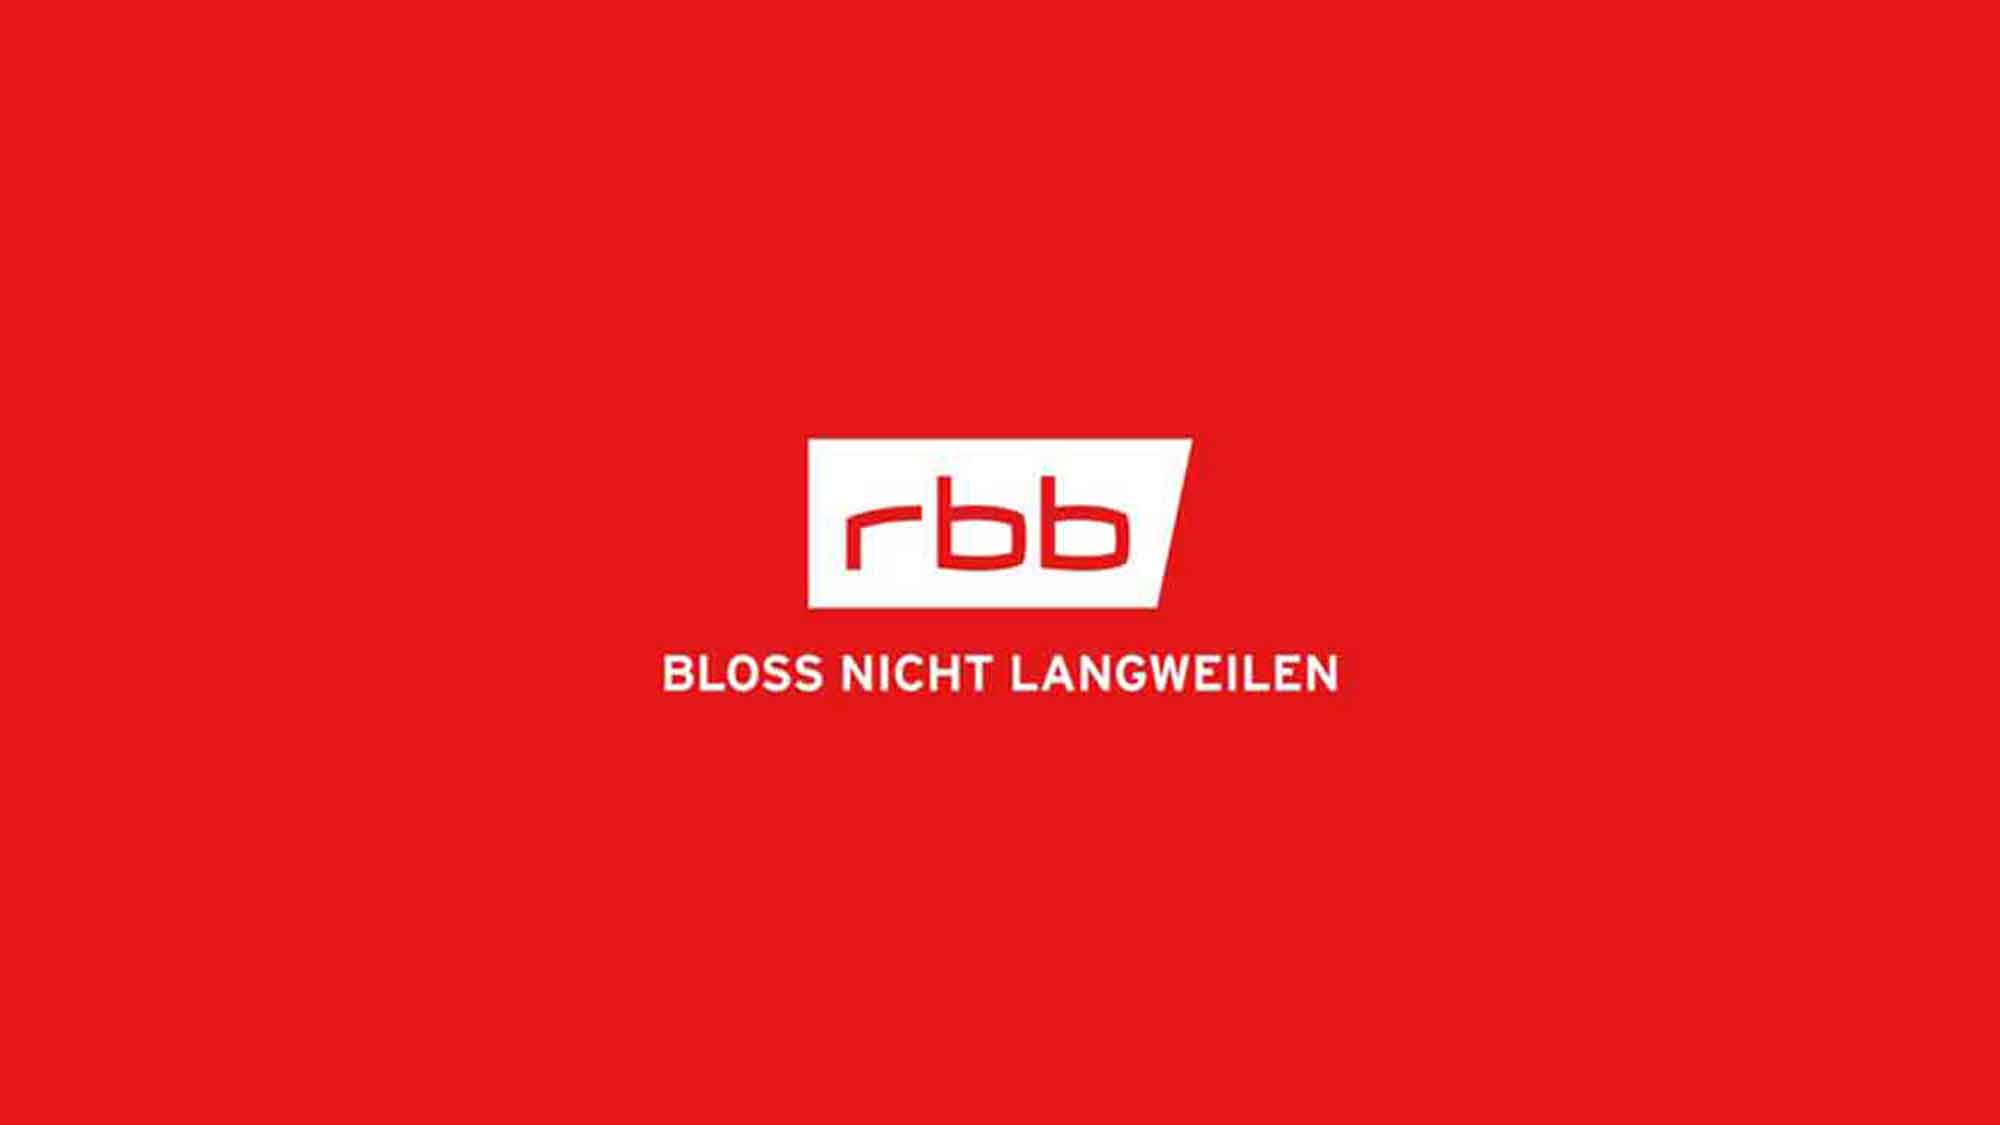 RBB 24 Recherche exklusiv: Generalstaatsanwaltschaft Brandenburg: Ermittlungen im Todesfall von Trebbin werden wieder aufgenommen